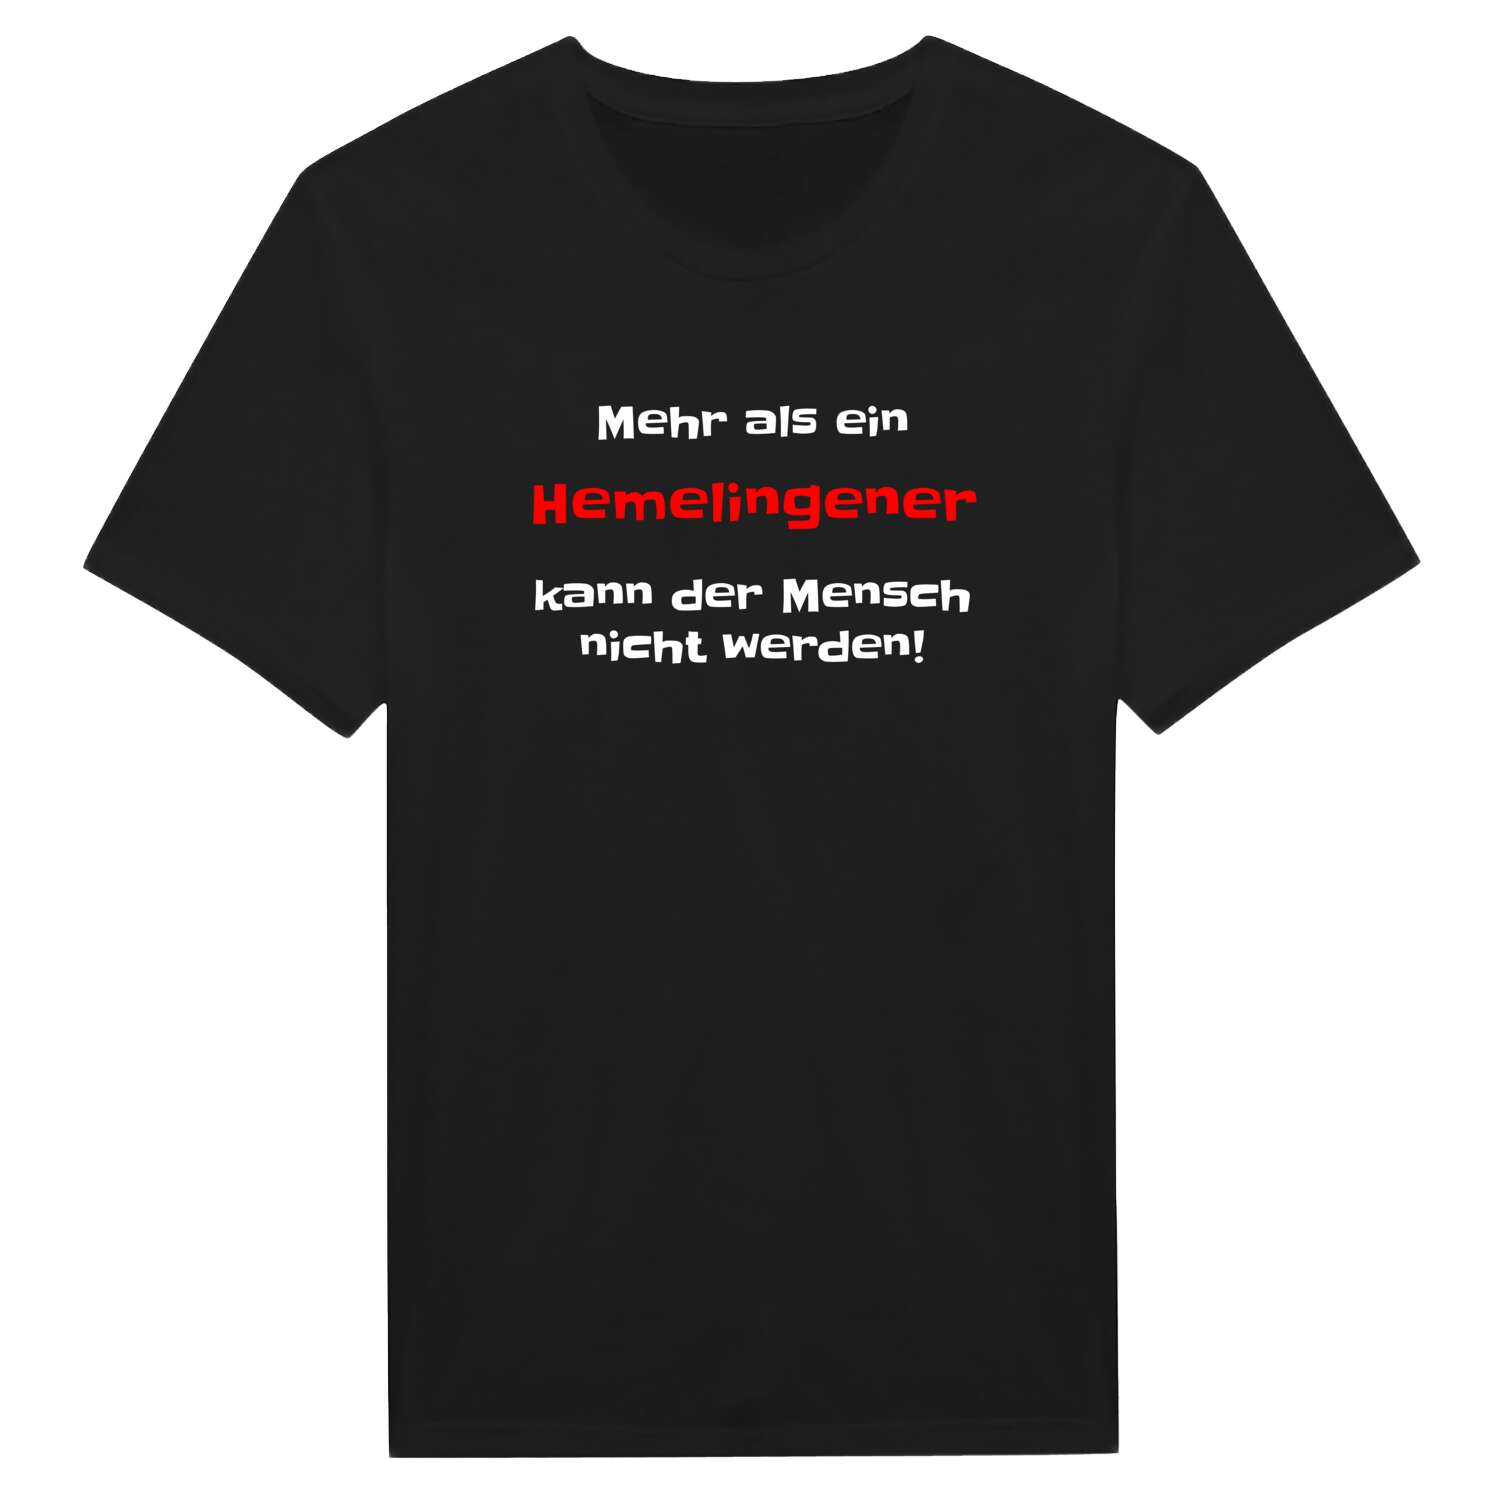 Hemelingen T-Shirt »Mehr als ein«